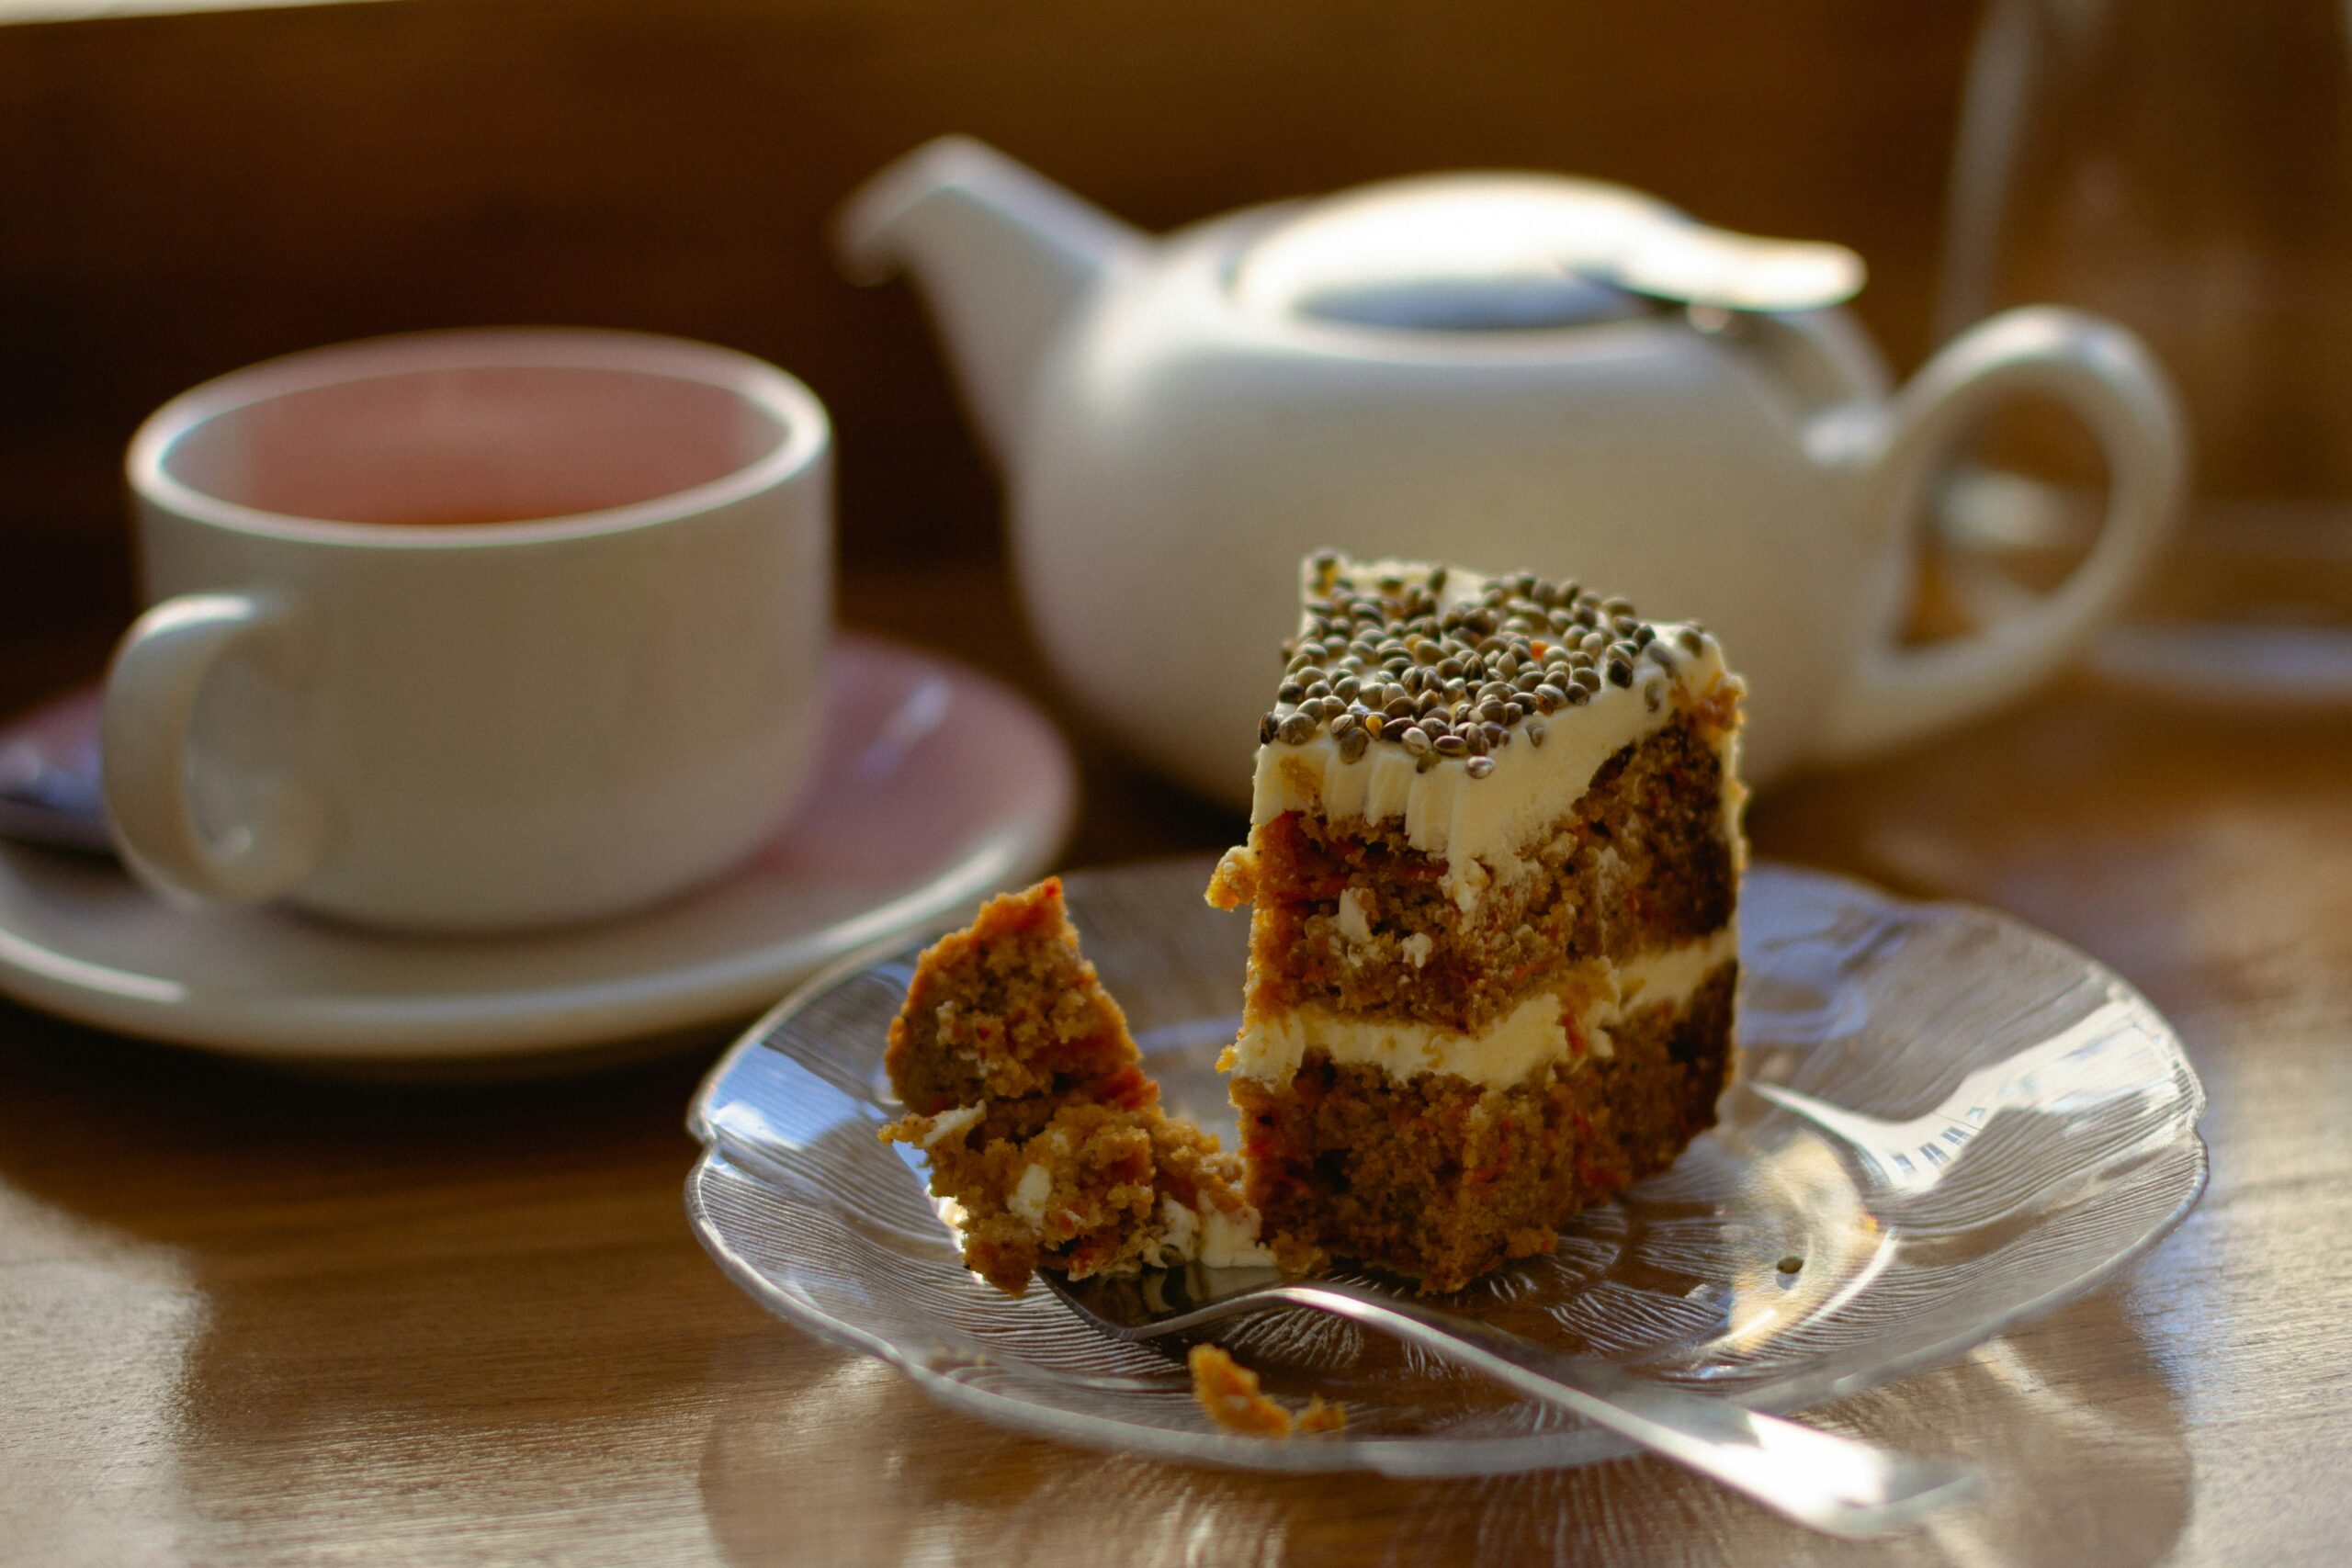 An image of a cake, tea cup and tea pot